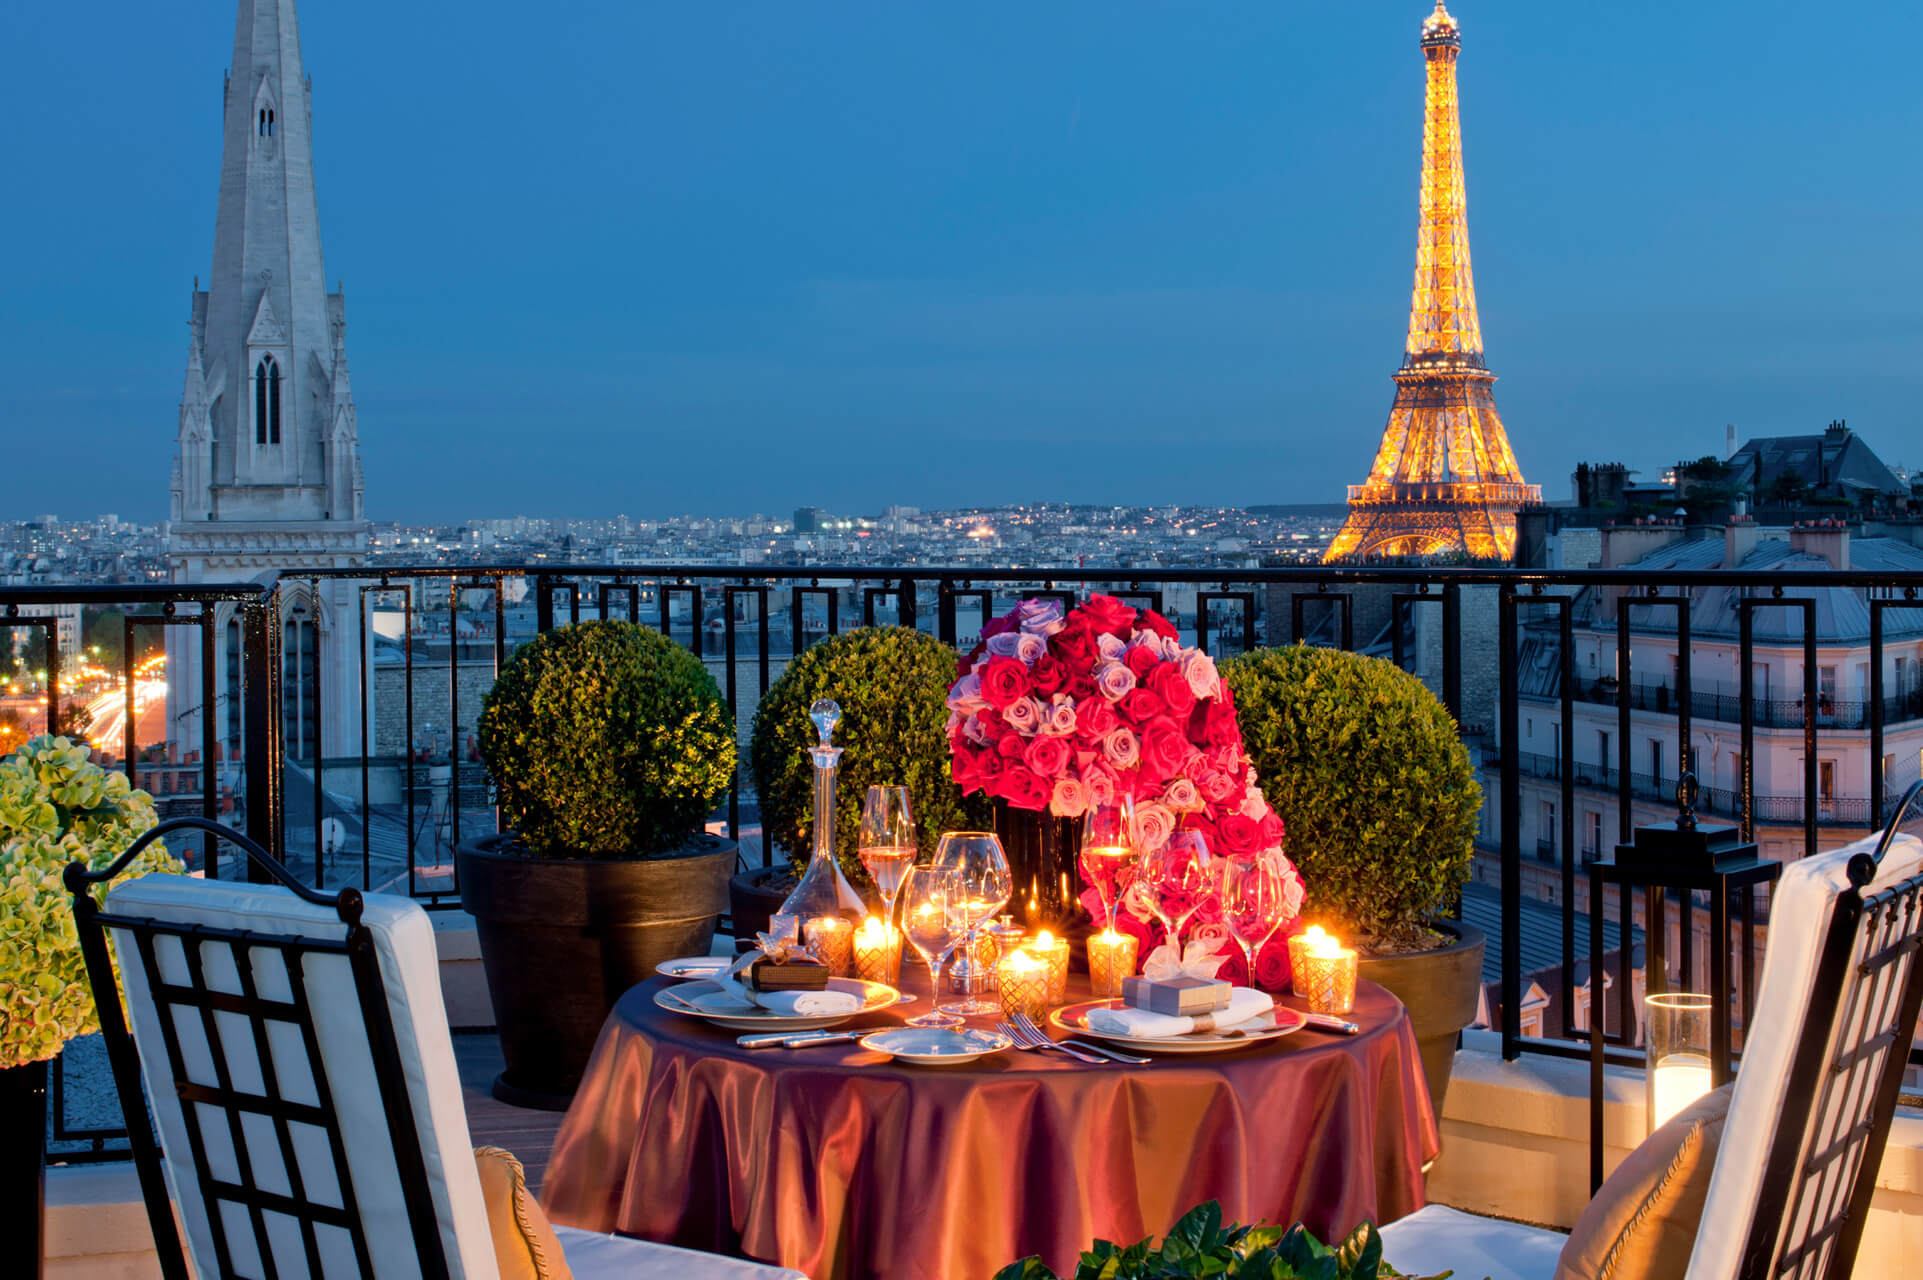 FOUR SEASONS HOTEL GEORGE V PARÍS: “El Hotel de las flores”